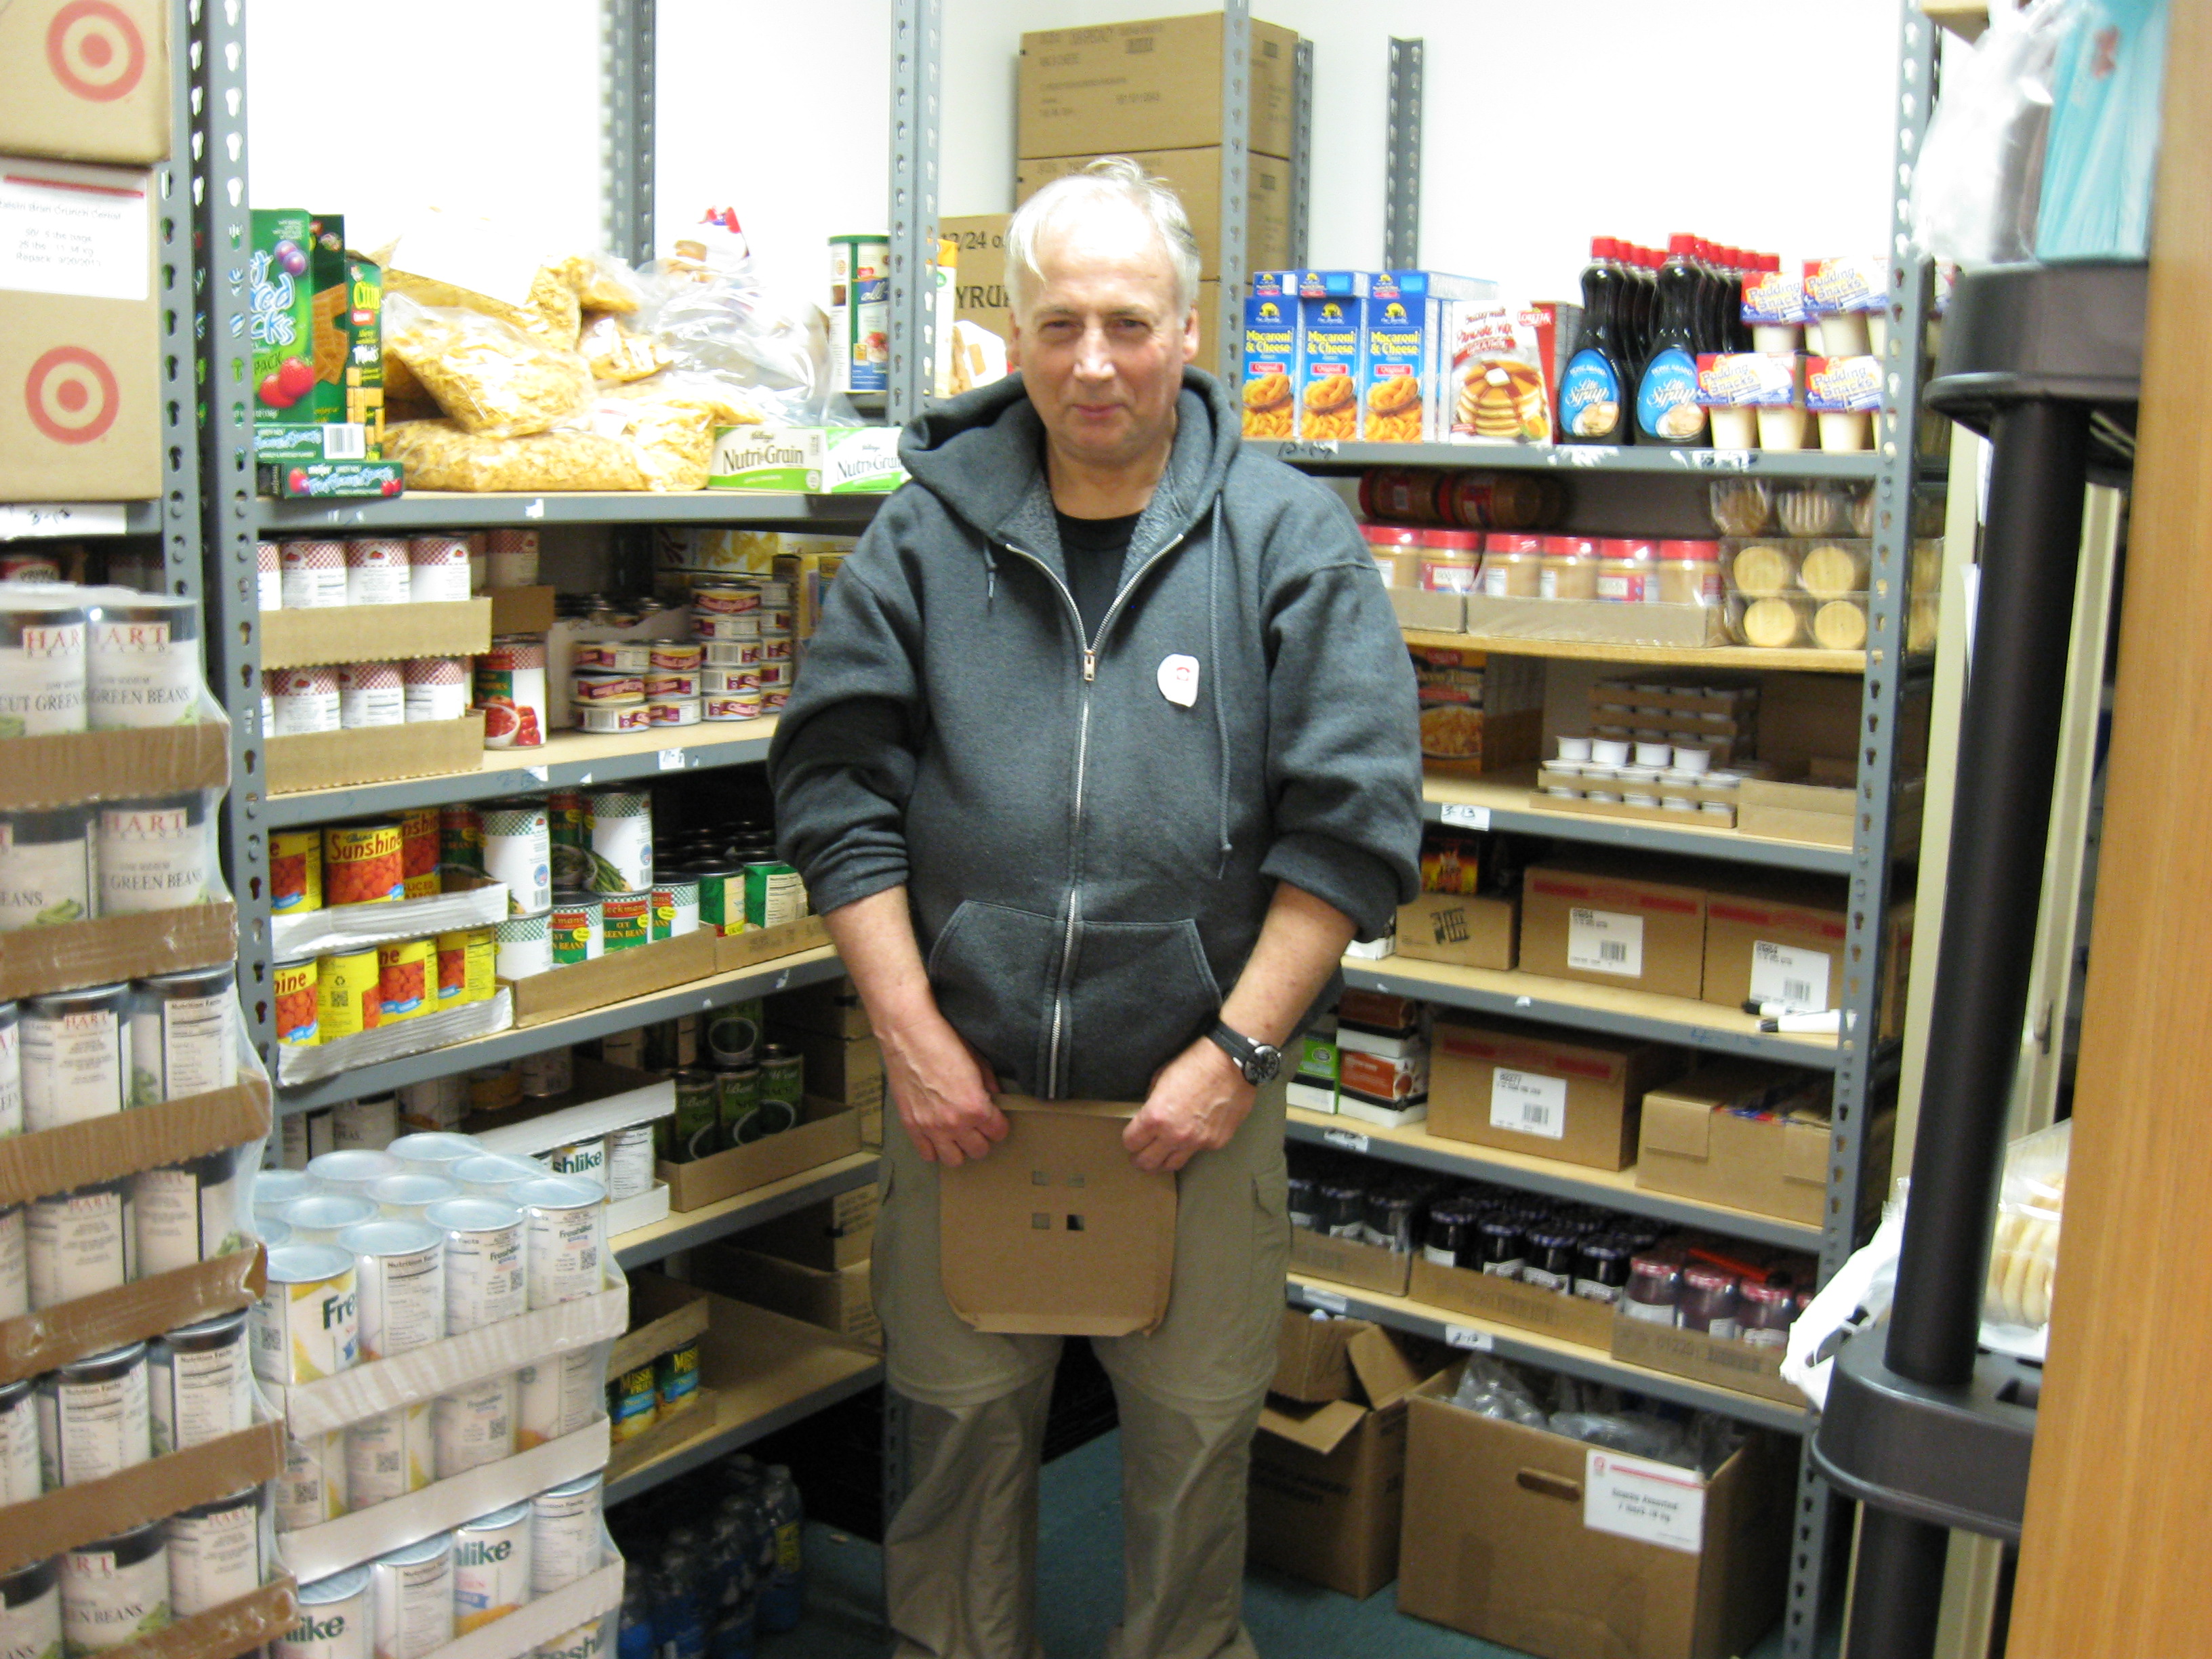 An RSVP Volunteer in the food pantry